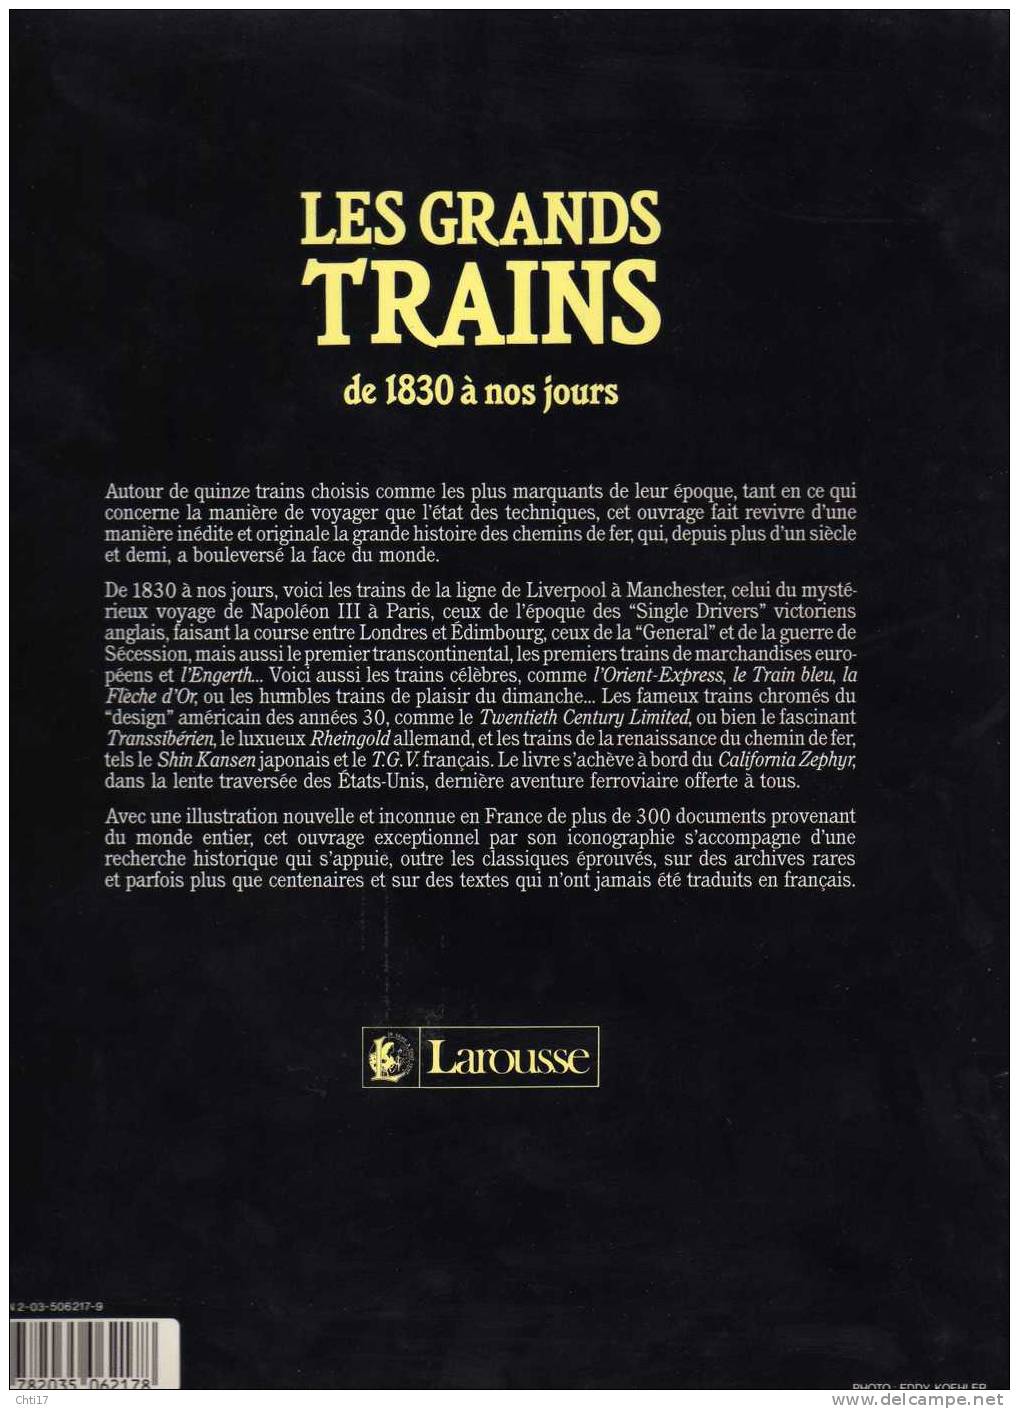 LES GRANDS TRAINS LOCOMOTIVES GARE  DE 1830 A NOS JOURS EDITION LAROUSSE 1989 - Railway & Tramway